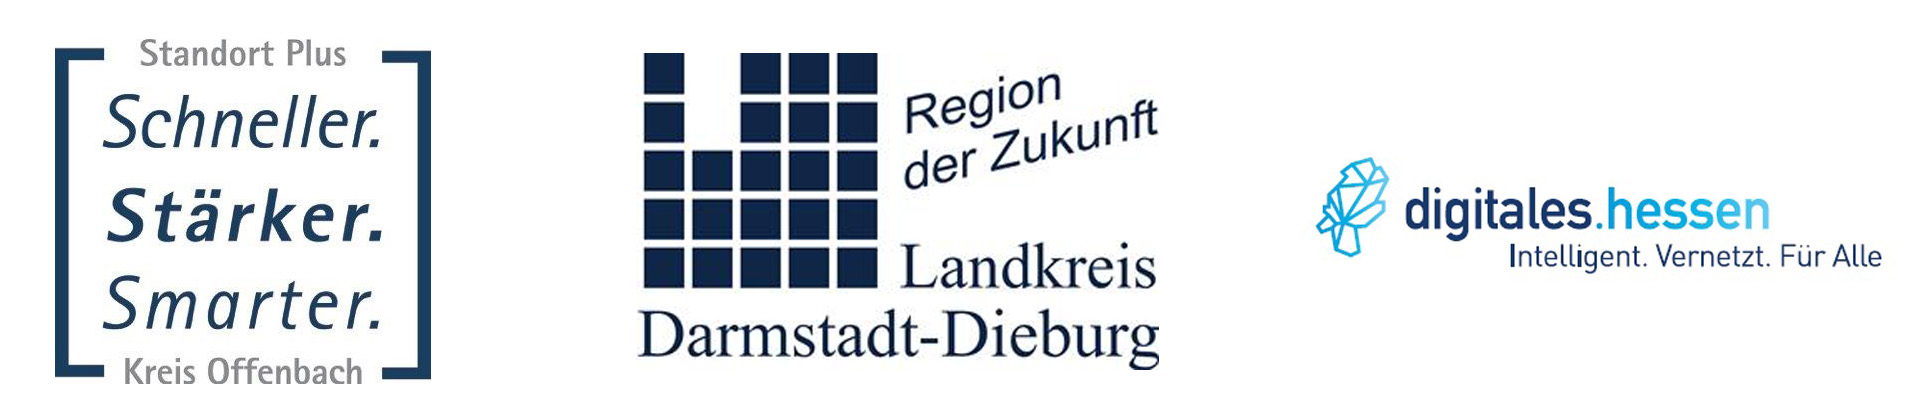 Smart Region - Smart City Logos